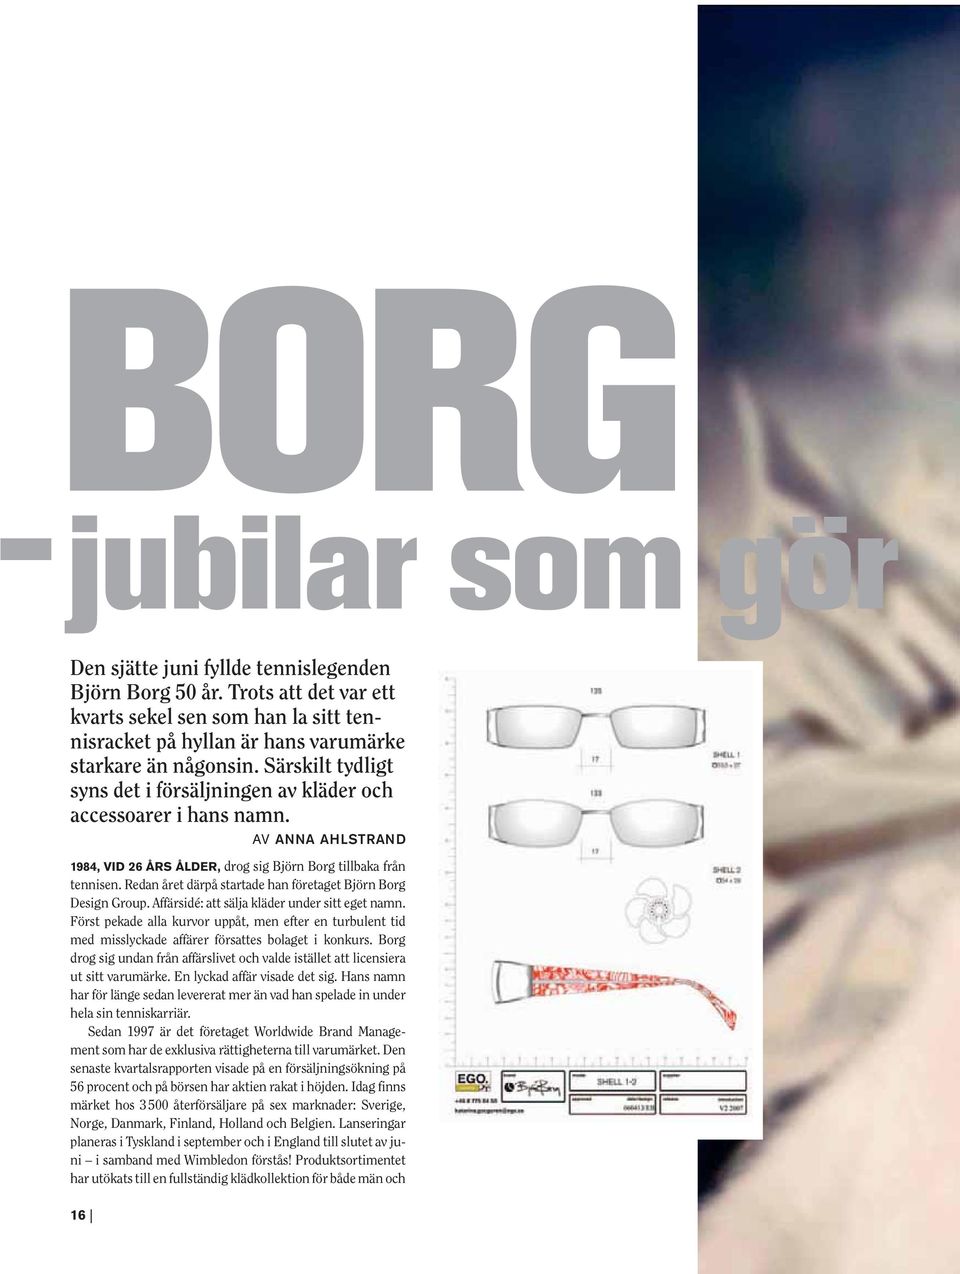 Redan året därpå startade han företaget Björn Borg Design Group. Affärsidé: att sälja kläder under sitt eget namn.